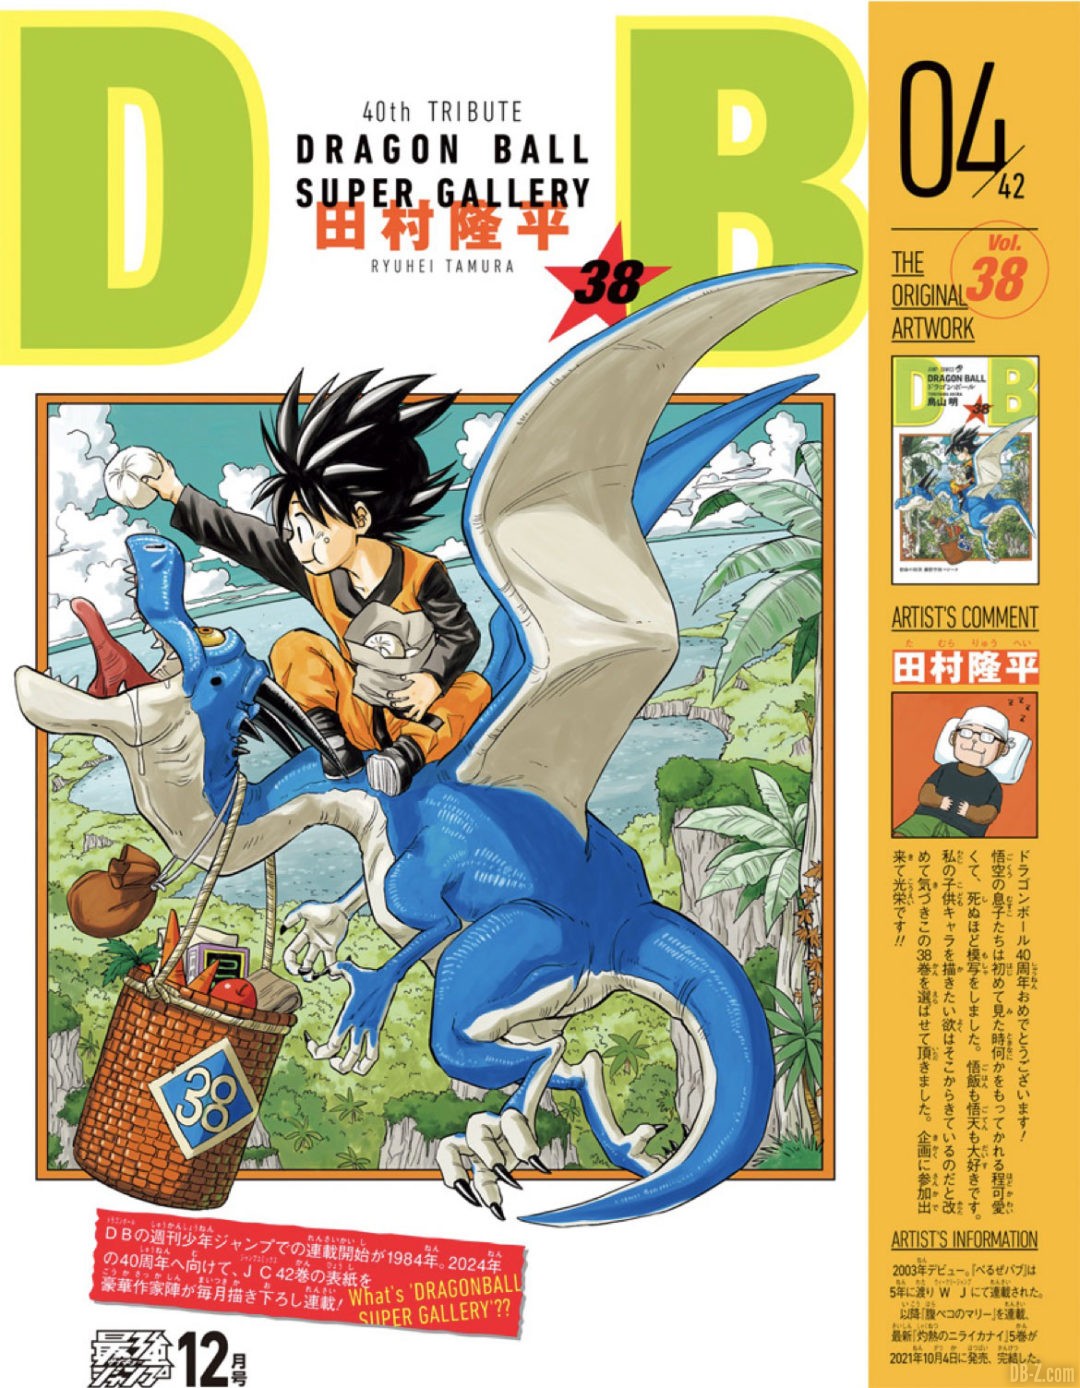 Dragon Ball Super Gallery 4 Ryuhei Tamura